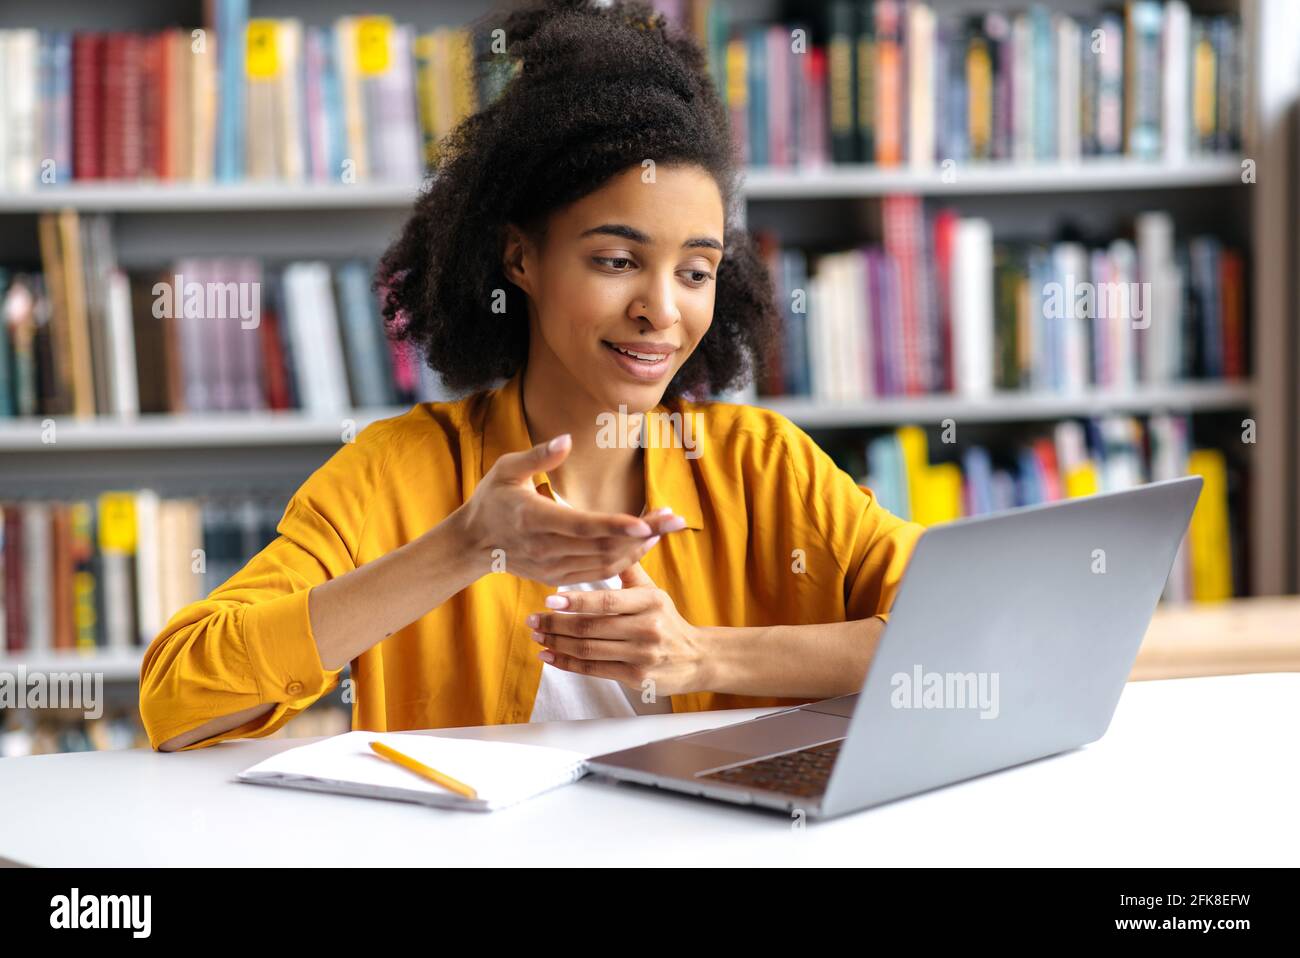 Communication en ligne. Confiante et attrayante fille afro-américaine élégante, étudiante dans une bibliothèque universitaire utilise un ordinateur portable, parlant sur un ami de vidéoconférence ou un camarade de classe, se faisant un geste de la main Banque D'Images